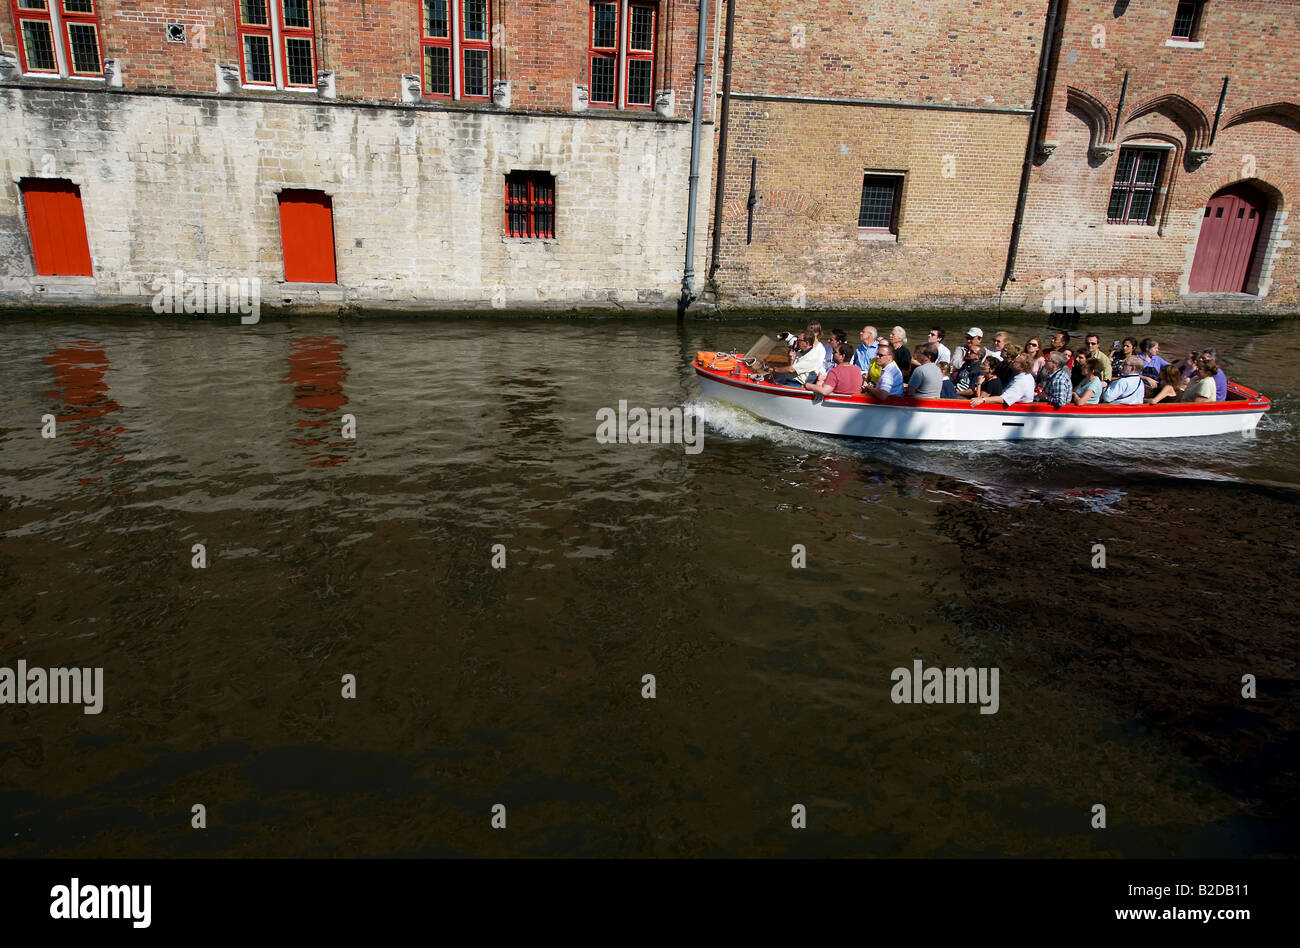 Il turista a godere di una gita in barca sul canale ammirando la città medievale da una prospettiva diversa. Foto Stock